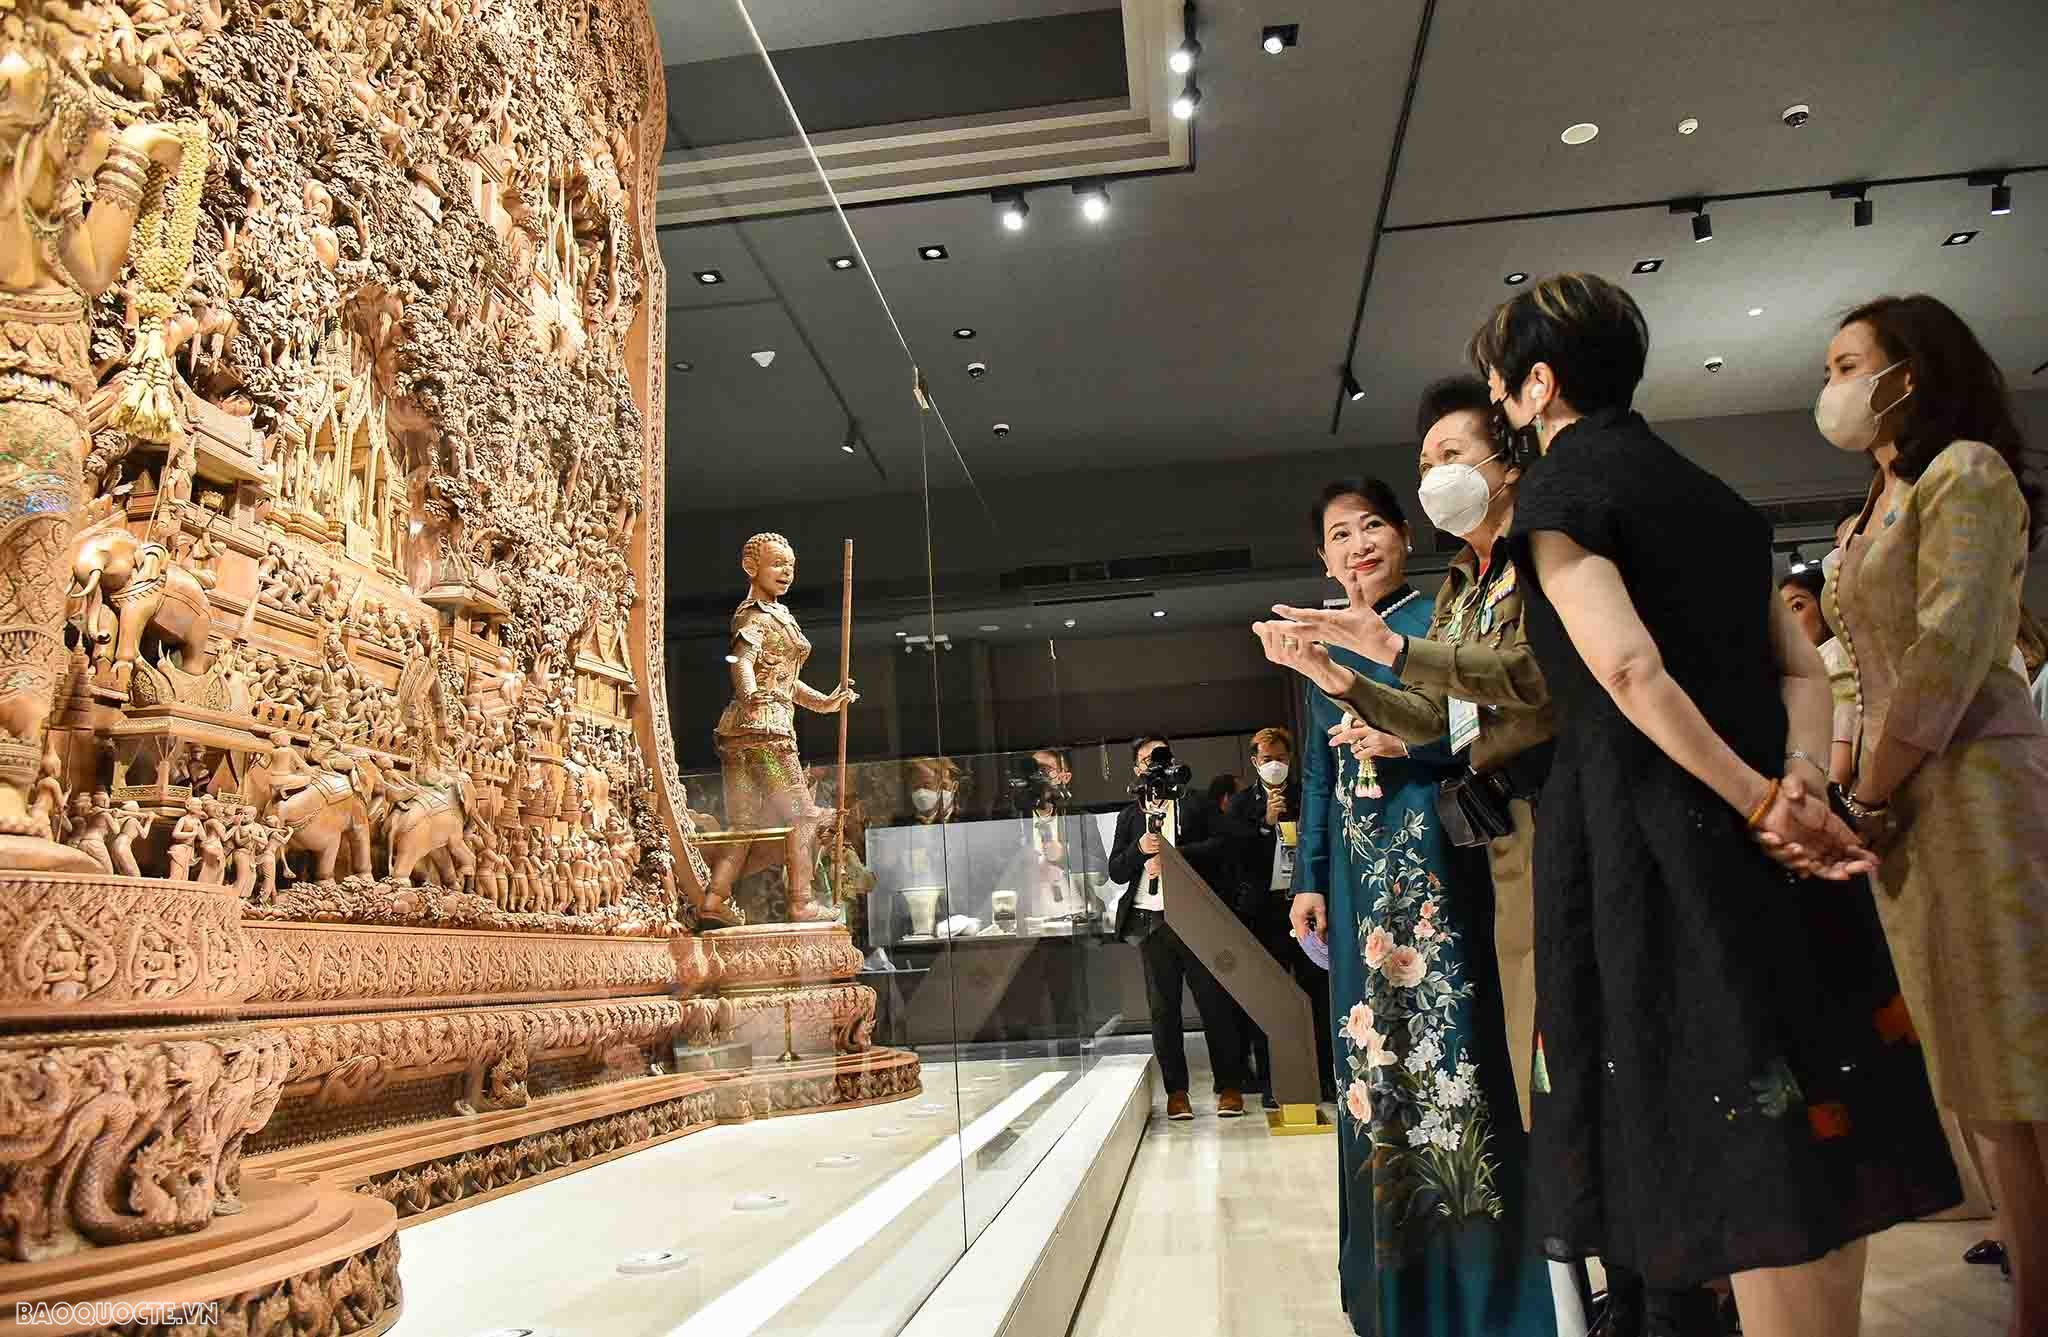 Bảo tàng Hoàng gia Thái Lan trưng bày các sản phẩm của Viện Nữ hoàng Sirikit – nơi đây chính là trung tâm đào tạo nghề nghiệp cho nhiều người dân lao động nghèo khó của Thái Lan và Bảo tàng do chính Nữ hoàng Sirikit thành lập.